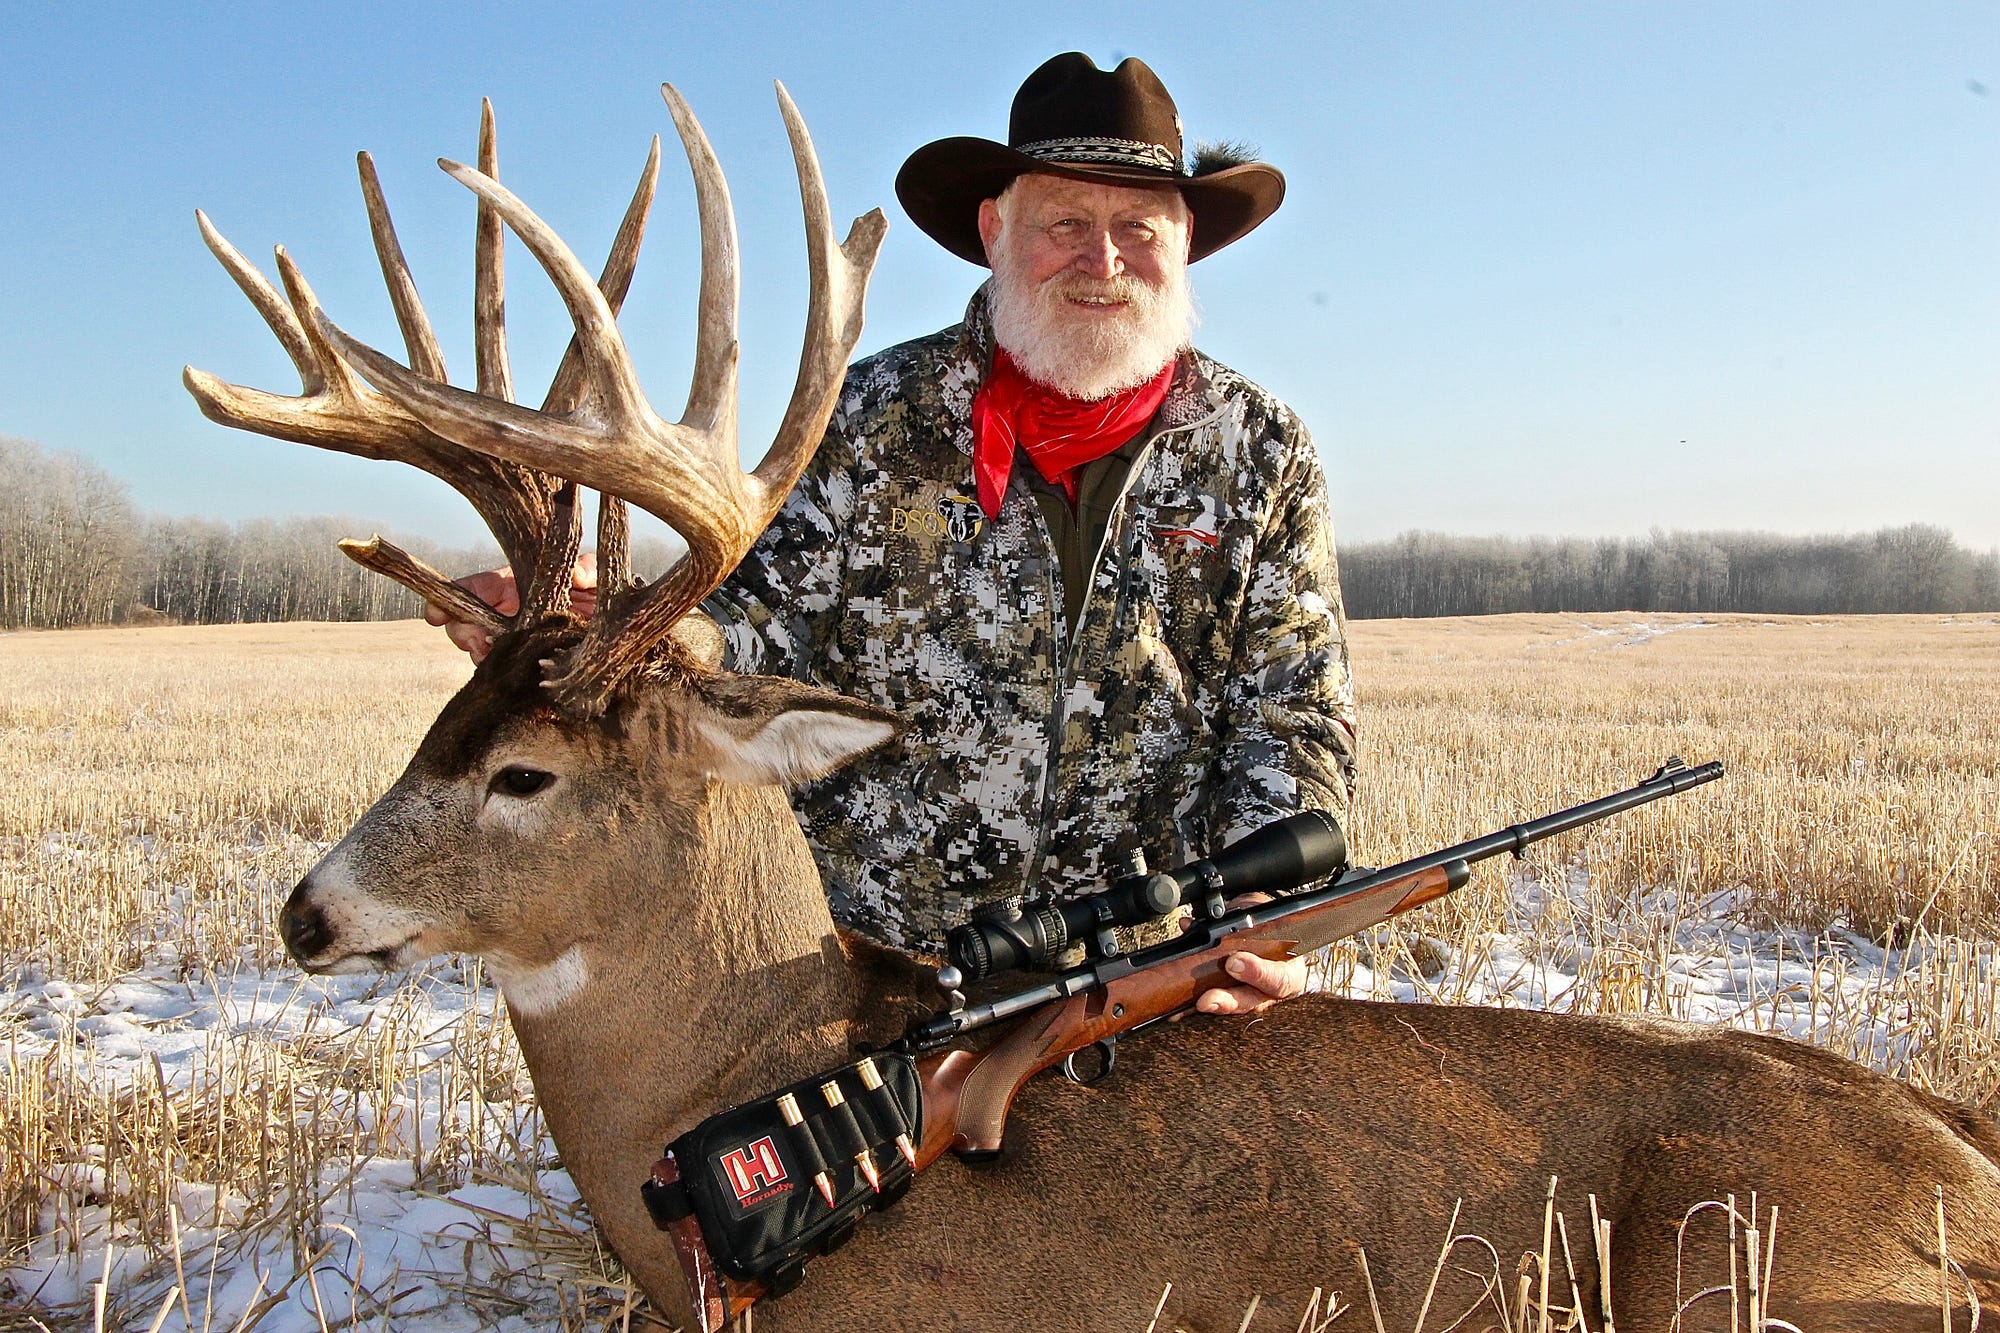 Deer & Deer Hunting February 2022 (Digital)